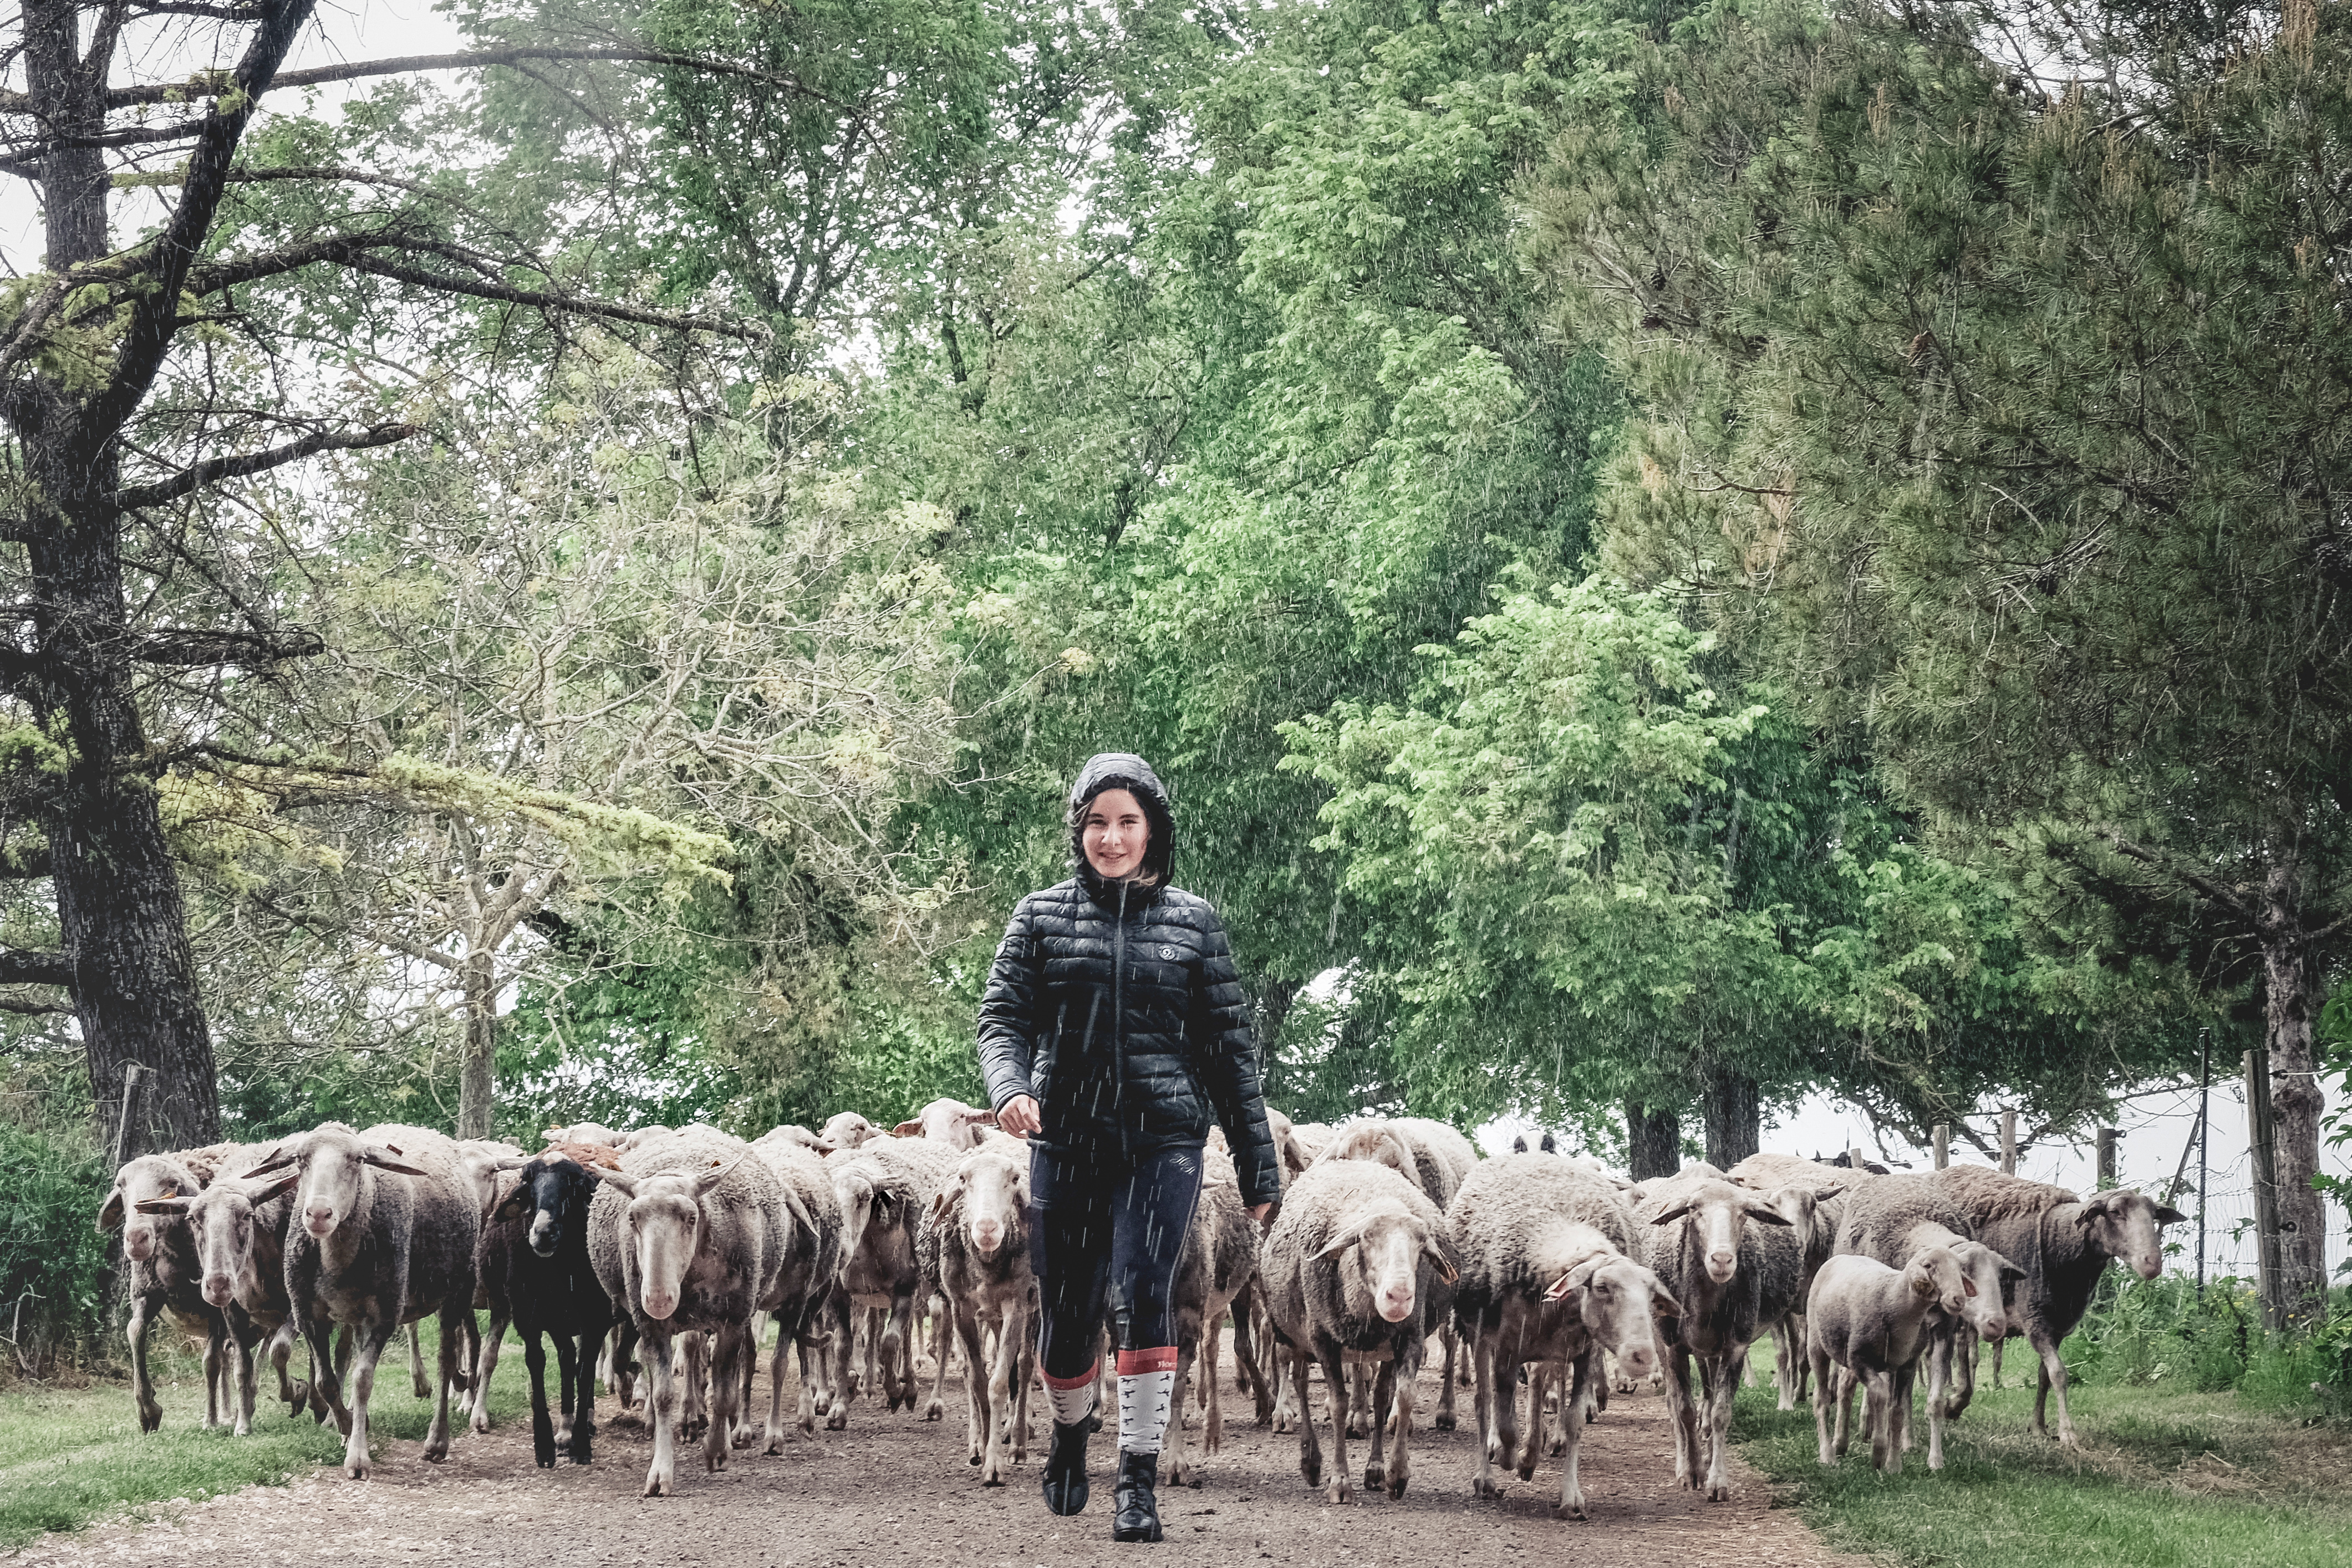 La cadette suivie de ces brebis dans la bergerie familiale Cazes Haut, Midi Pyrénées par Klara Beck